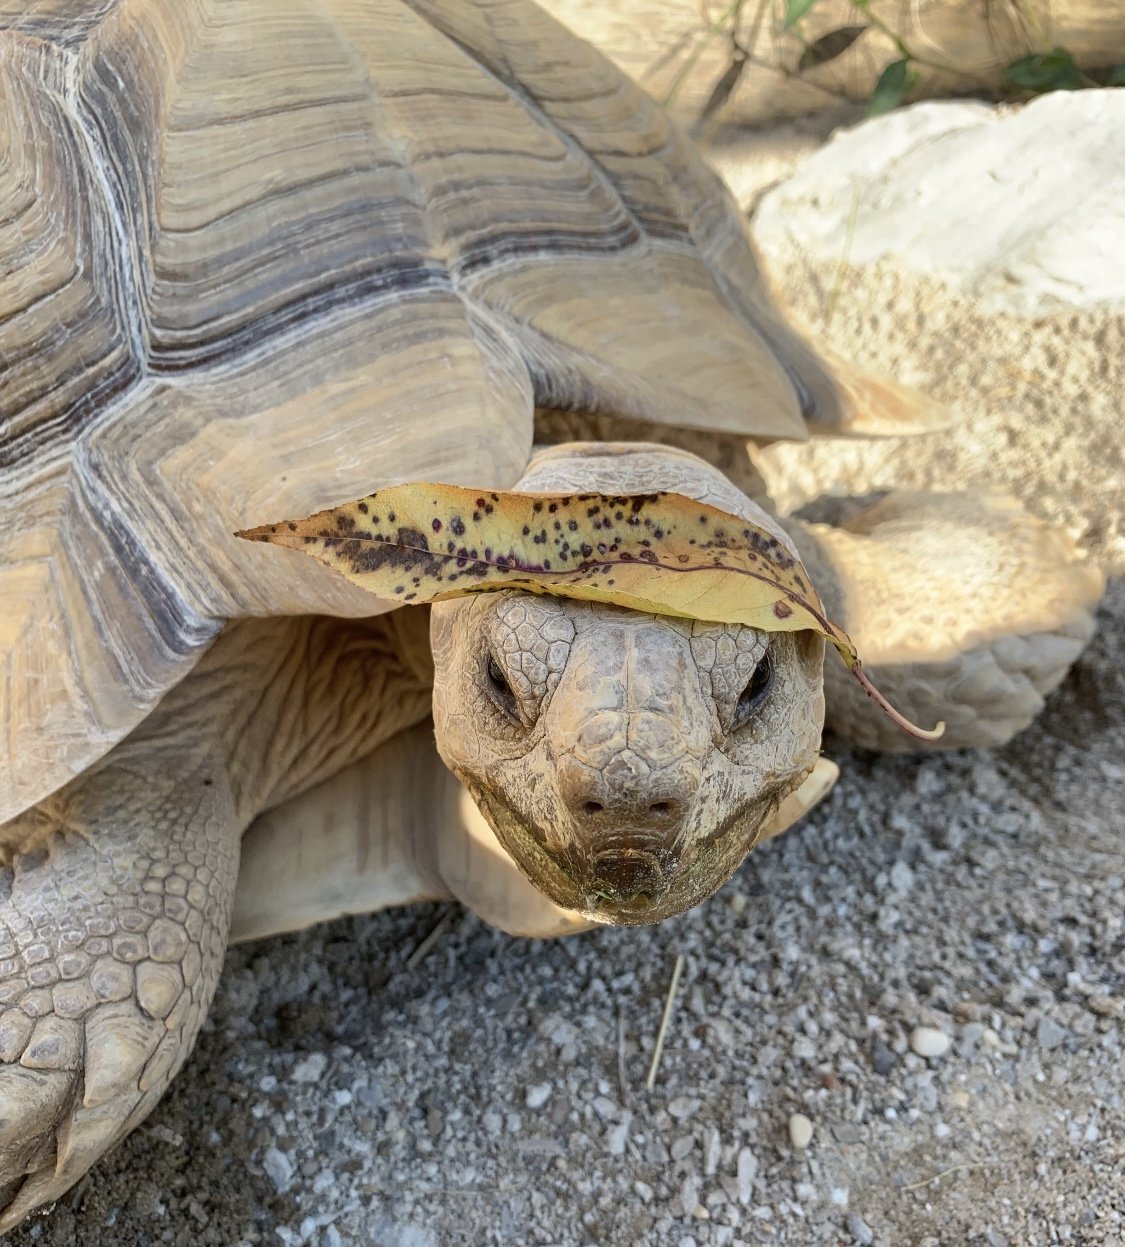 Methuselah the African Spurred Tortoise